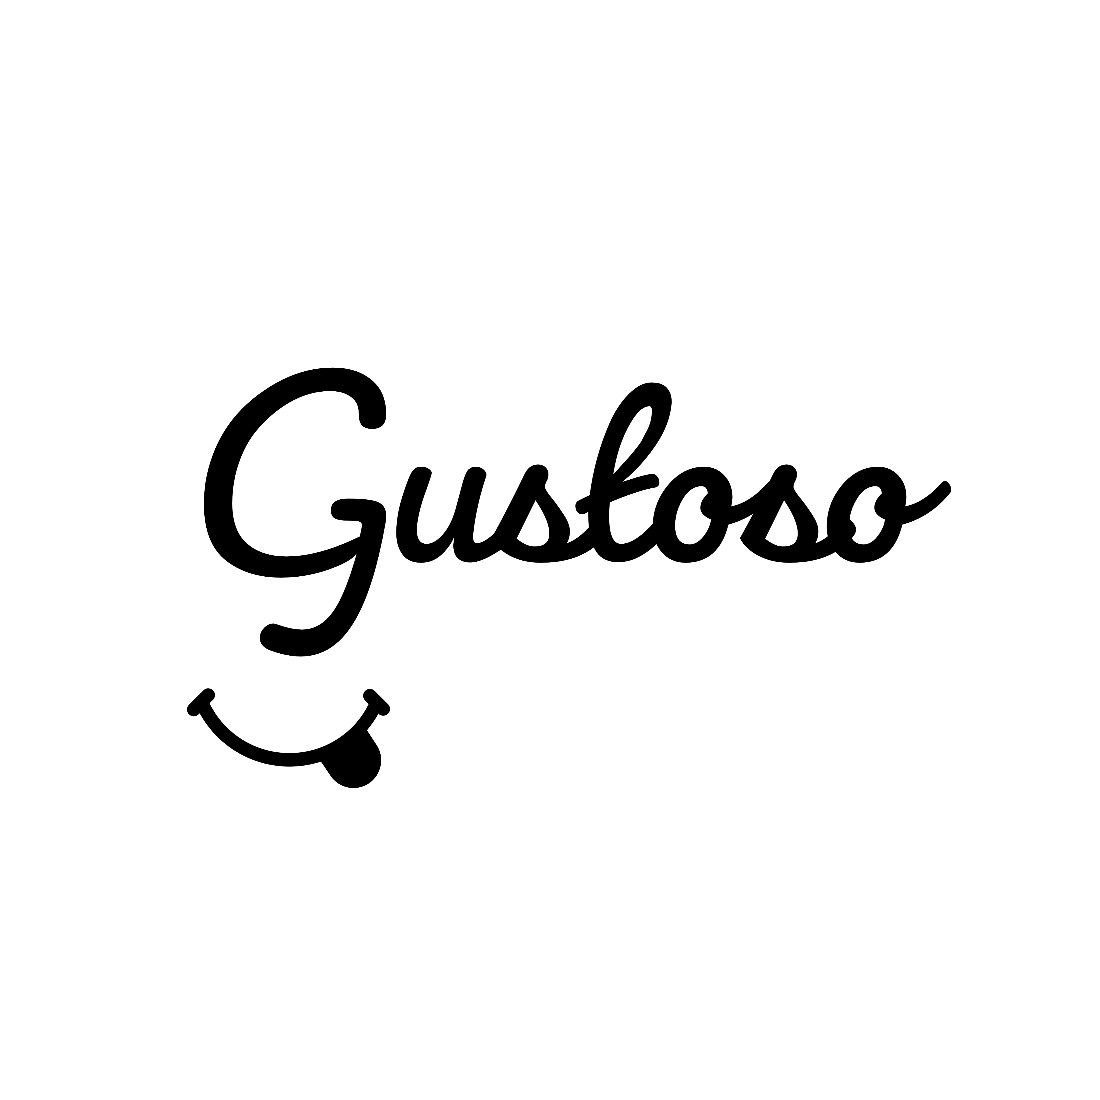 Gustoso - Restaurant Logo in black color.